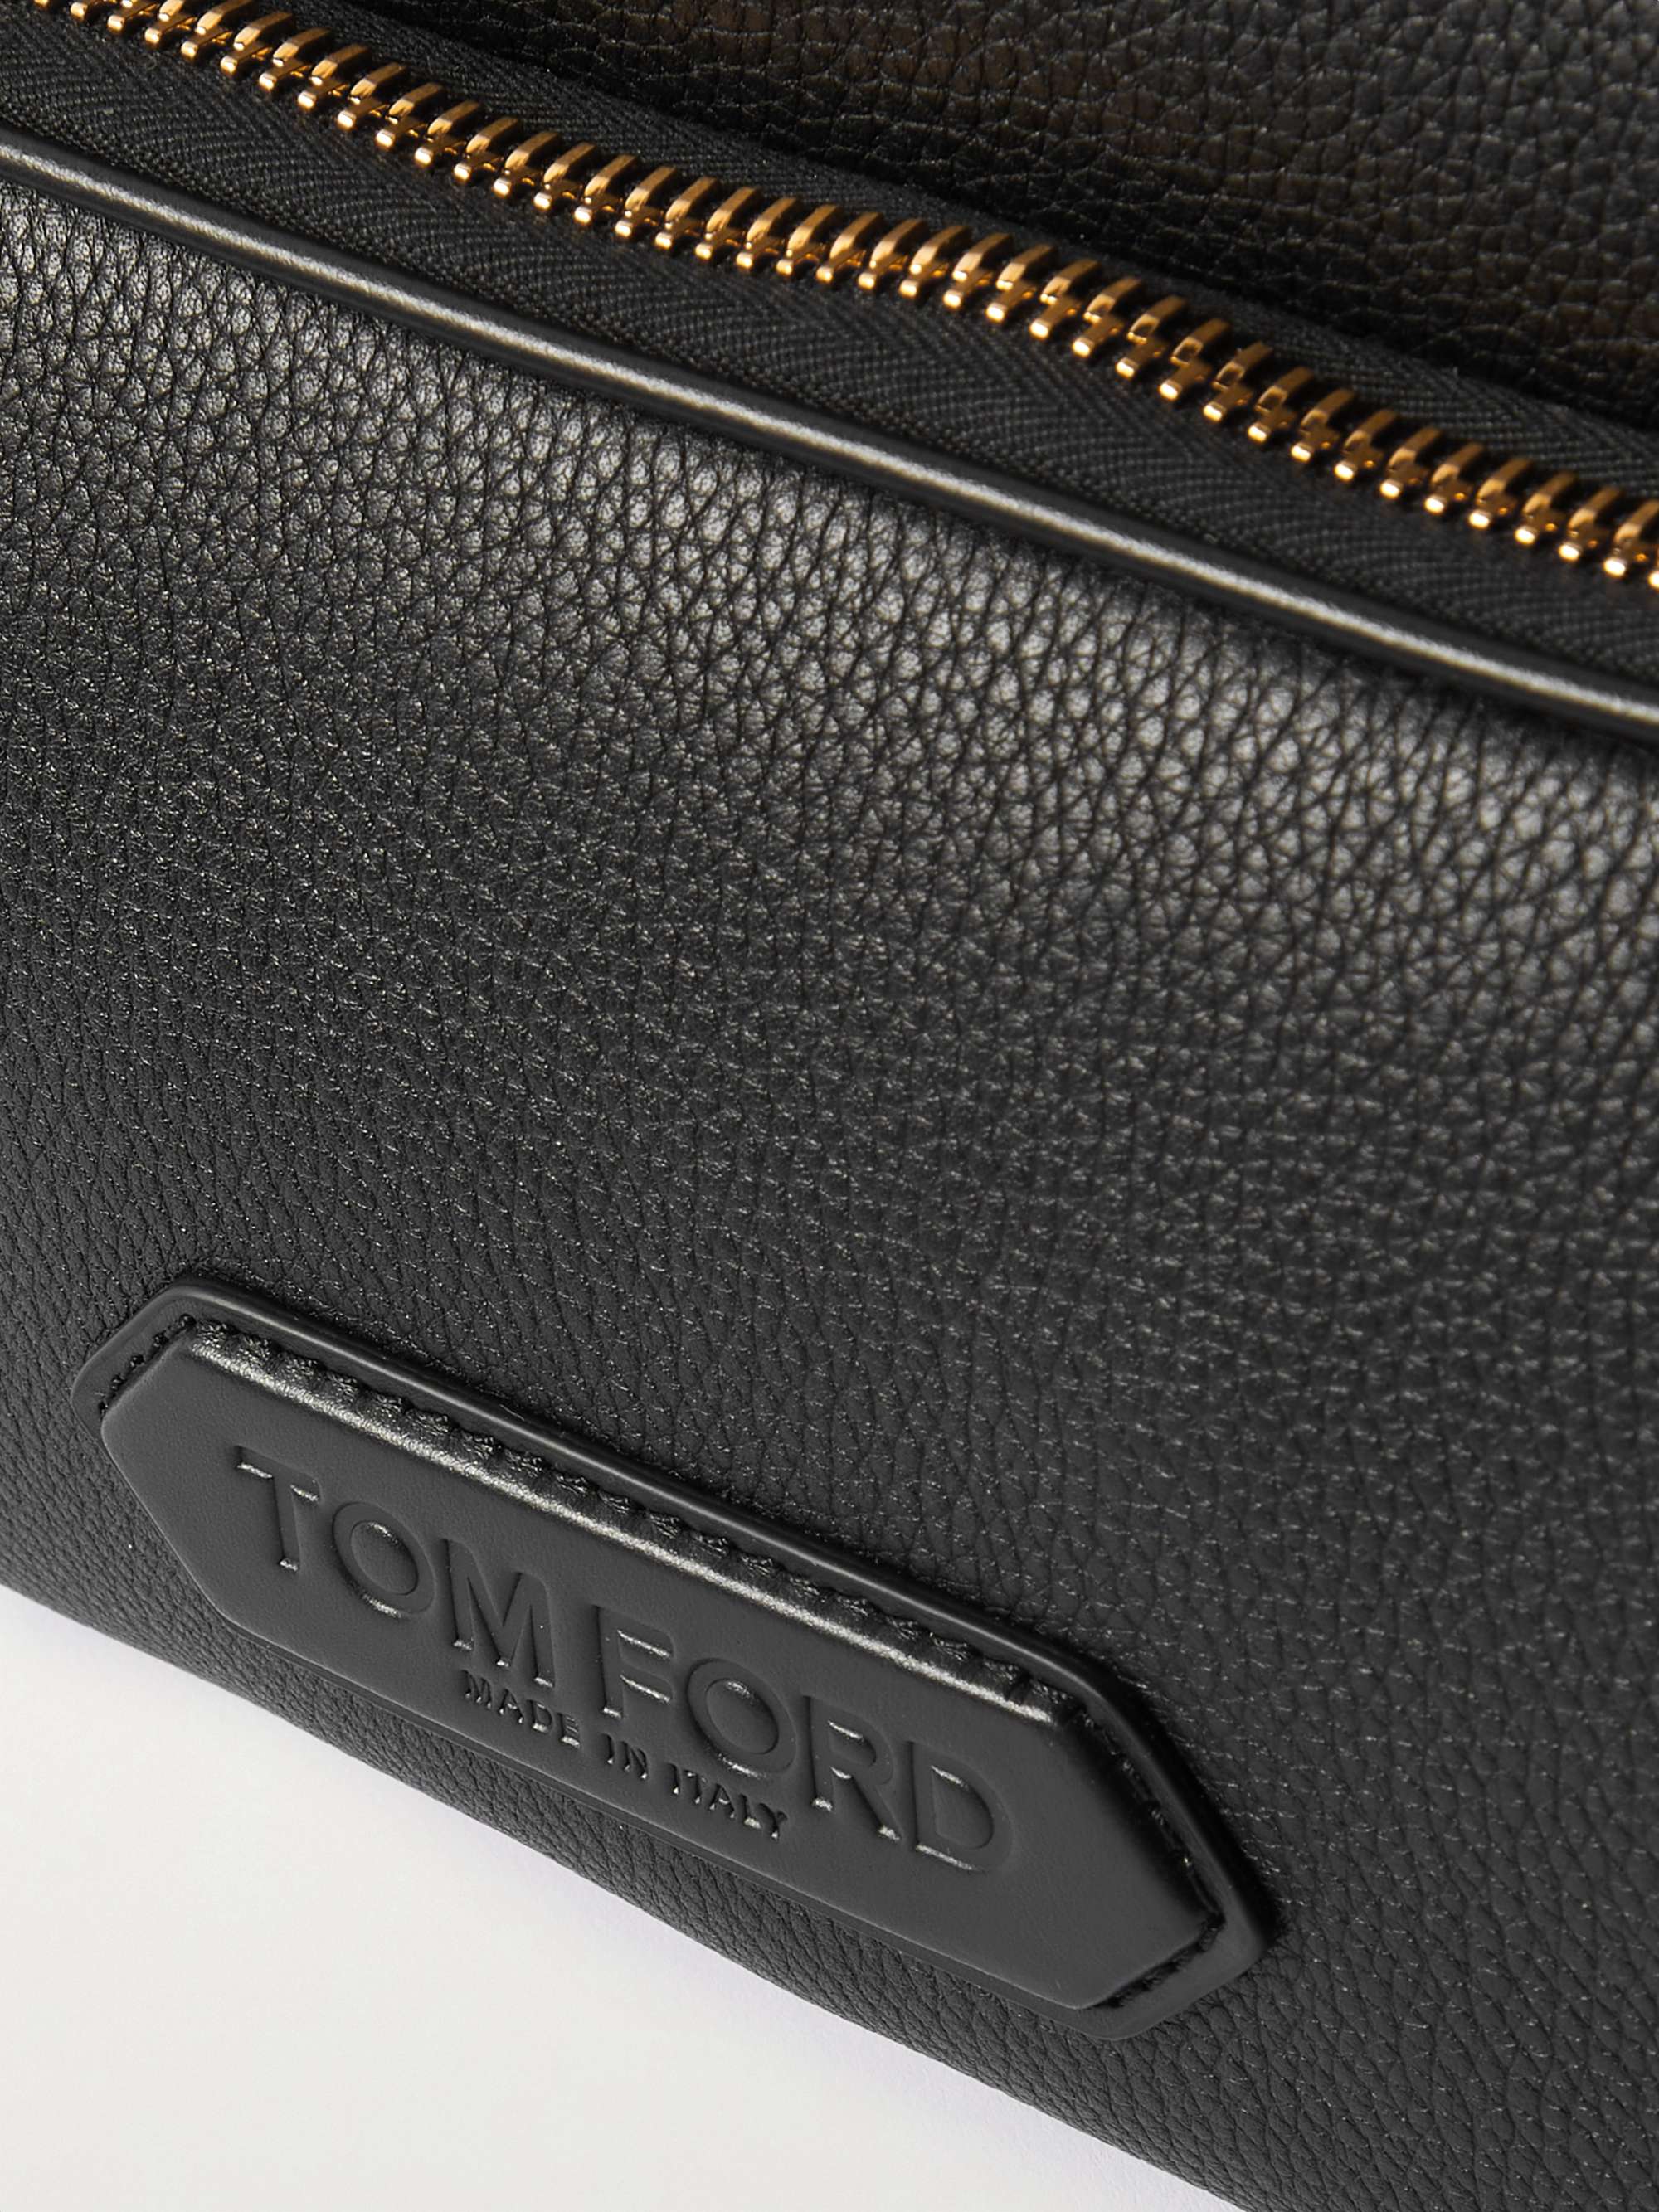 TOM FORD Full-Grain Leather Messenger Bag